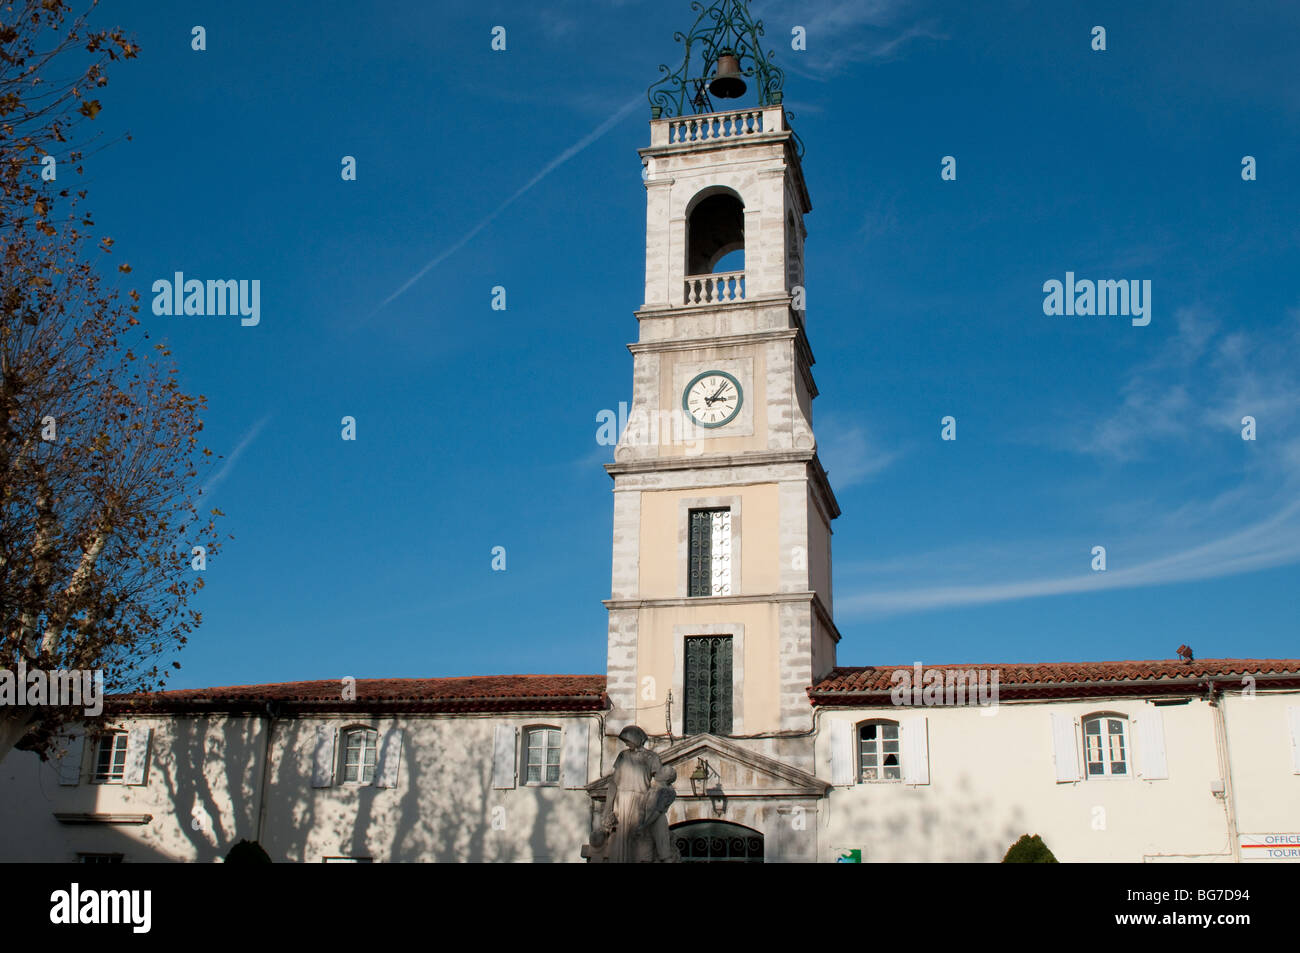 Tour de l'horloge, Ganges, Hérault, dans le sud de la France Banque D'Images